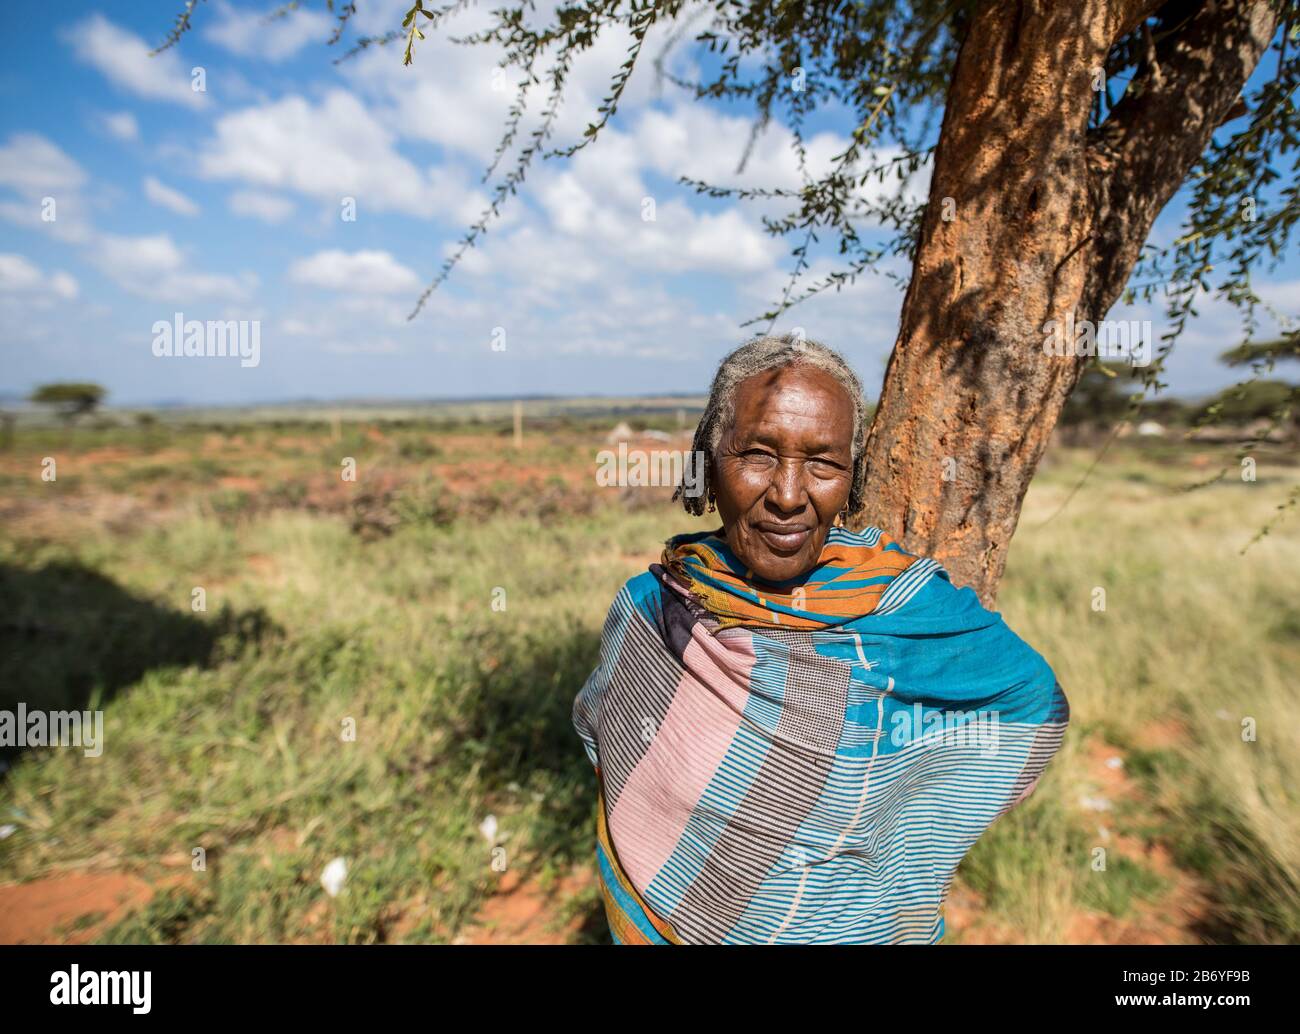 Borana, ÄTHIOPIEN-1. NOVEMBER 2018: Porträt einer älteren indigenen Frau in der Region Borana im Süden Äthiopiens. Stockfoto